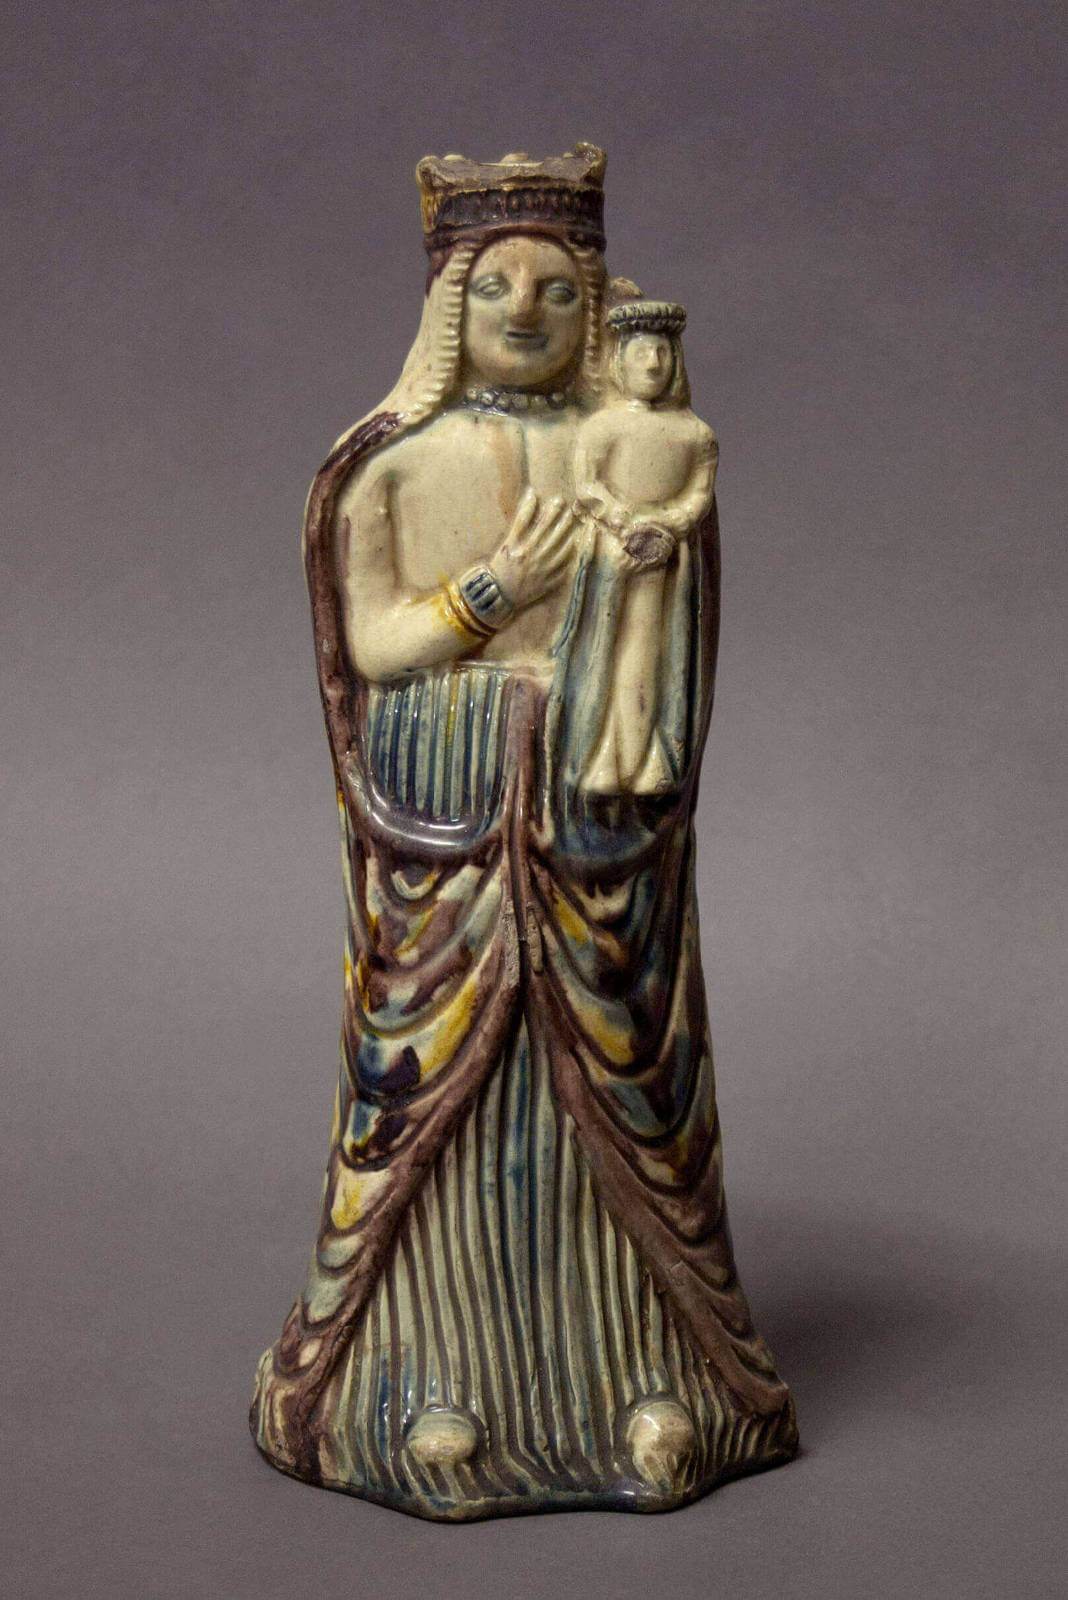 Statuette de Vierge à l'Enfant